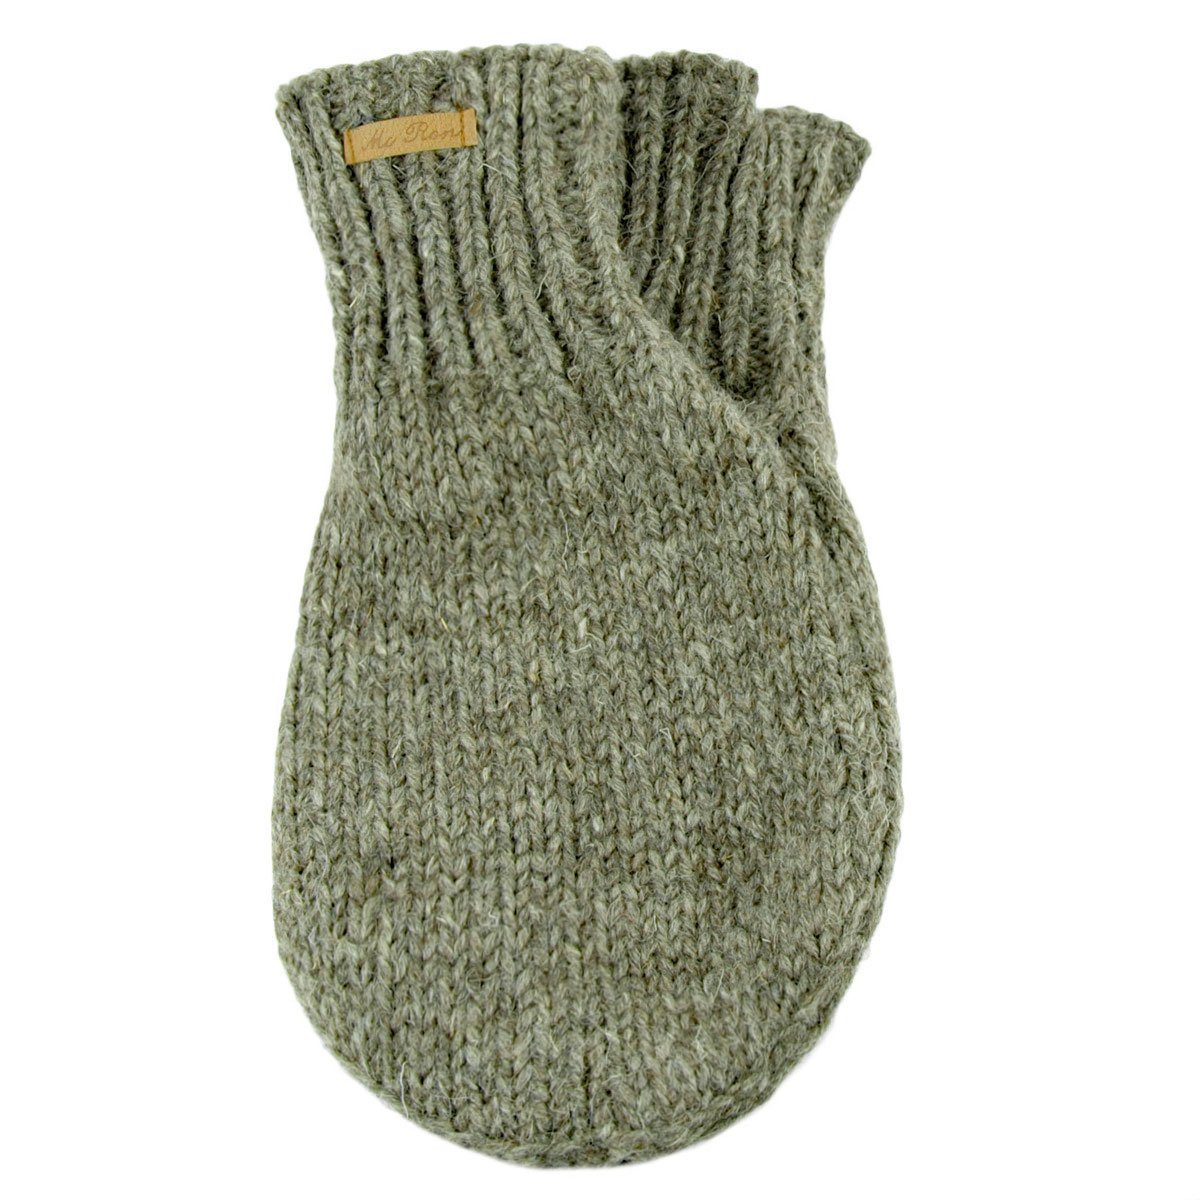 McRon Strickhandschuhe »Pärchenhandschuh Modell Valentin« Ein Handschuh zum  Händchenhalten, komplett mit Fleece gefüttert online kaufen | OTTO